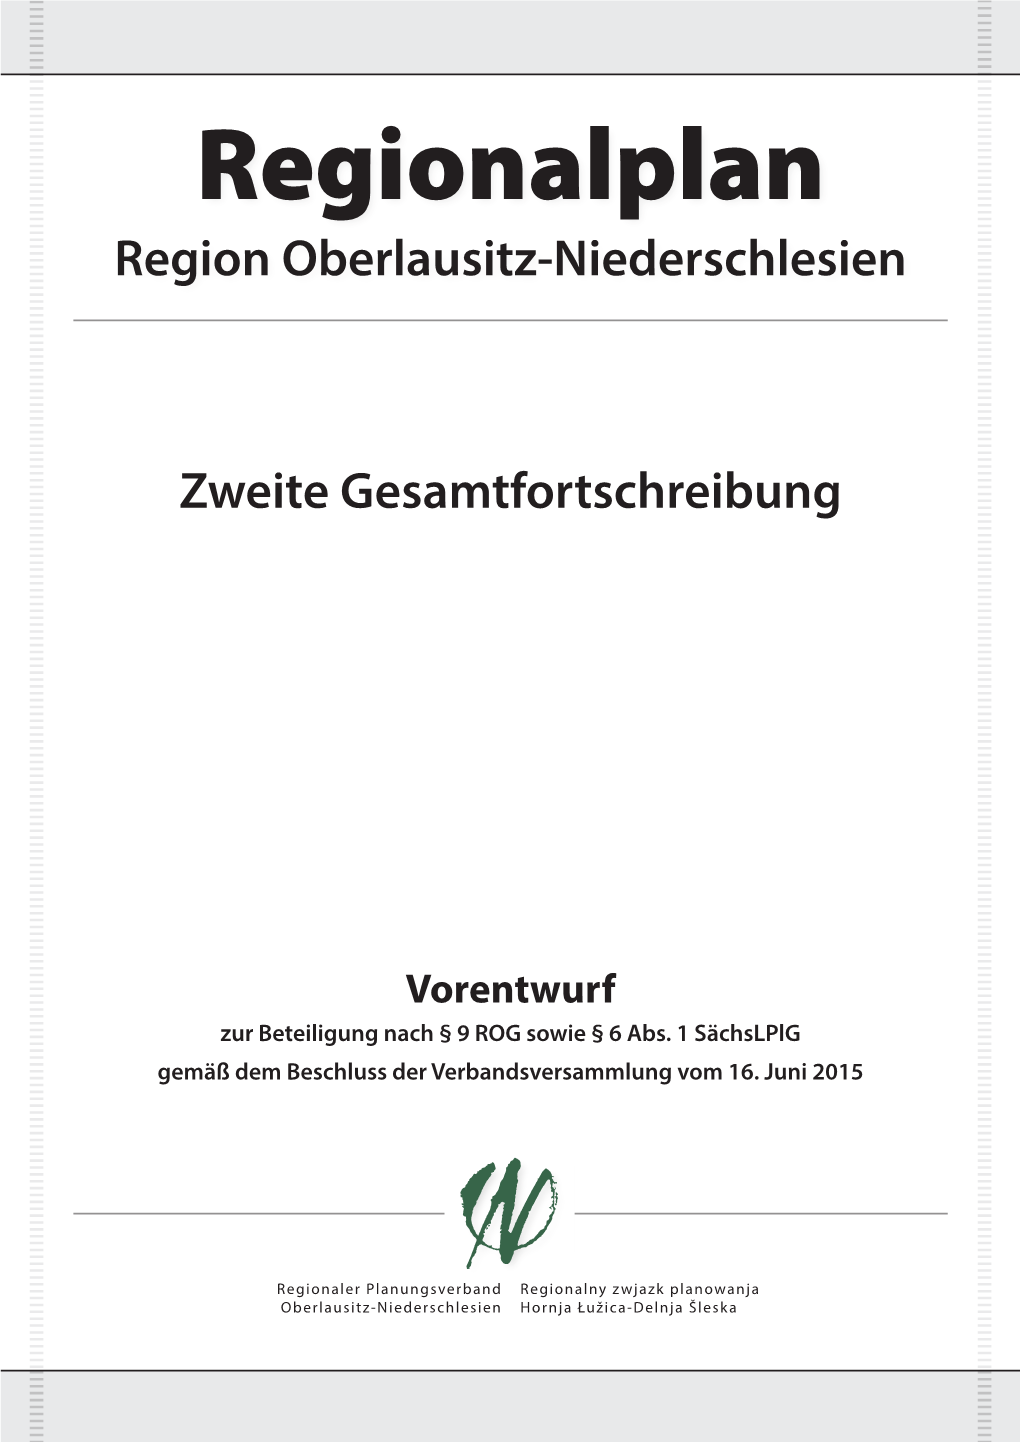 Regionalplan Region Oberlausitz-Niederschlesien